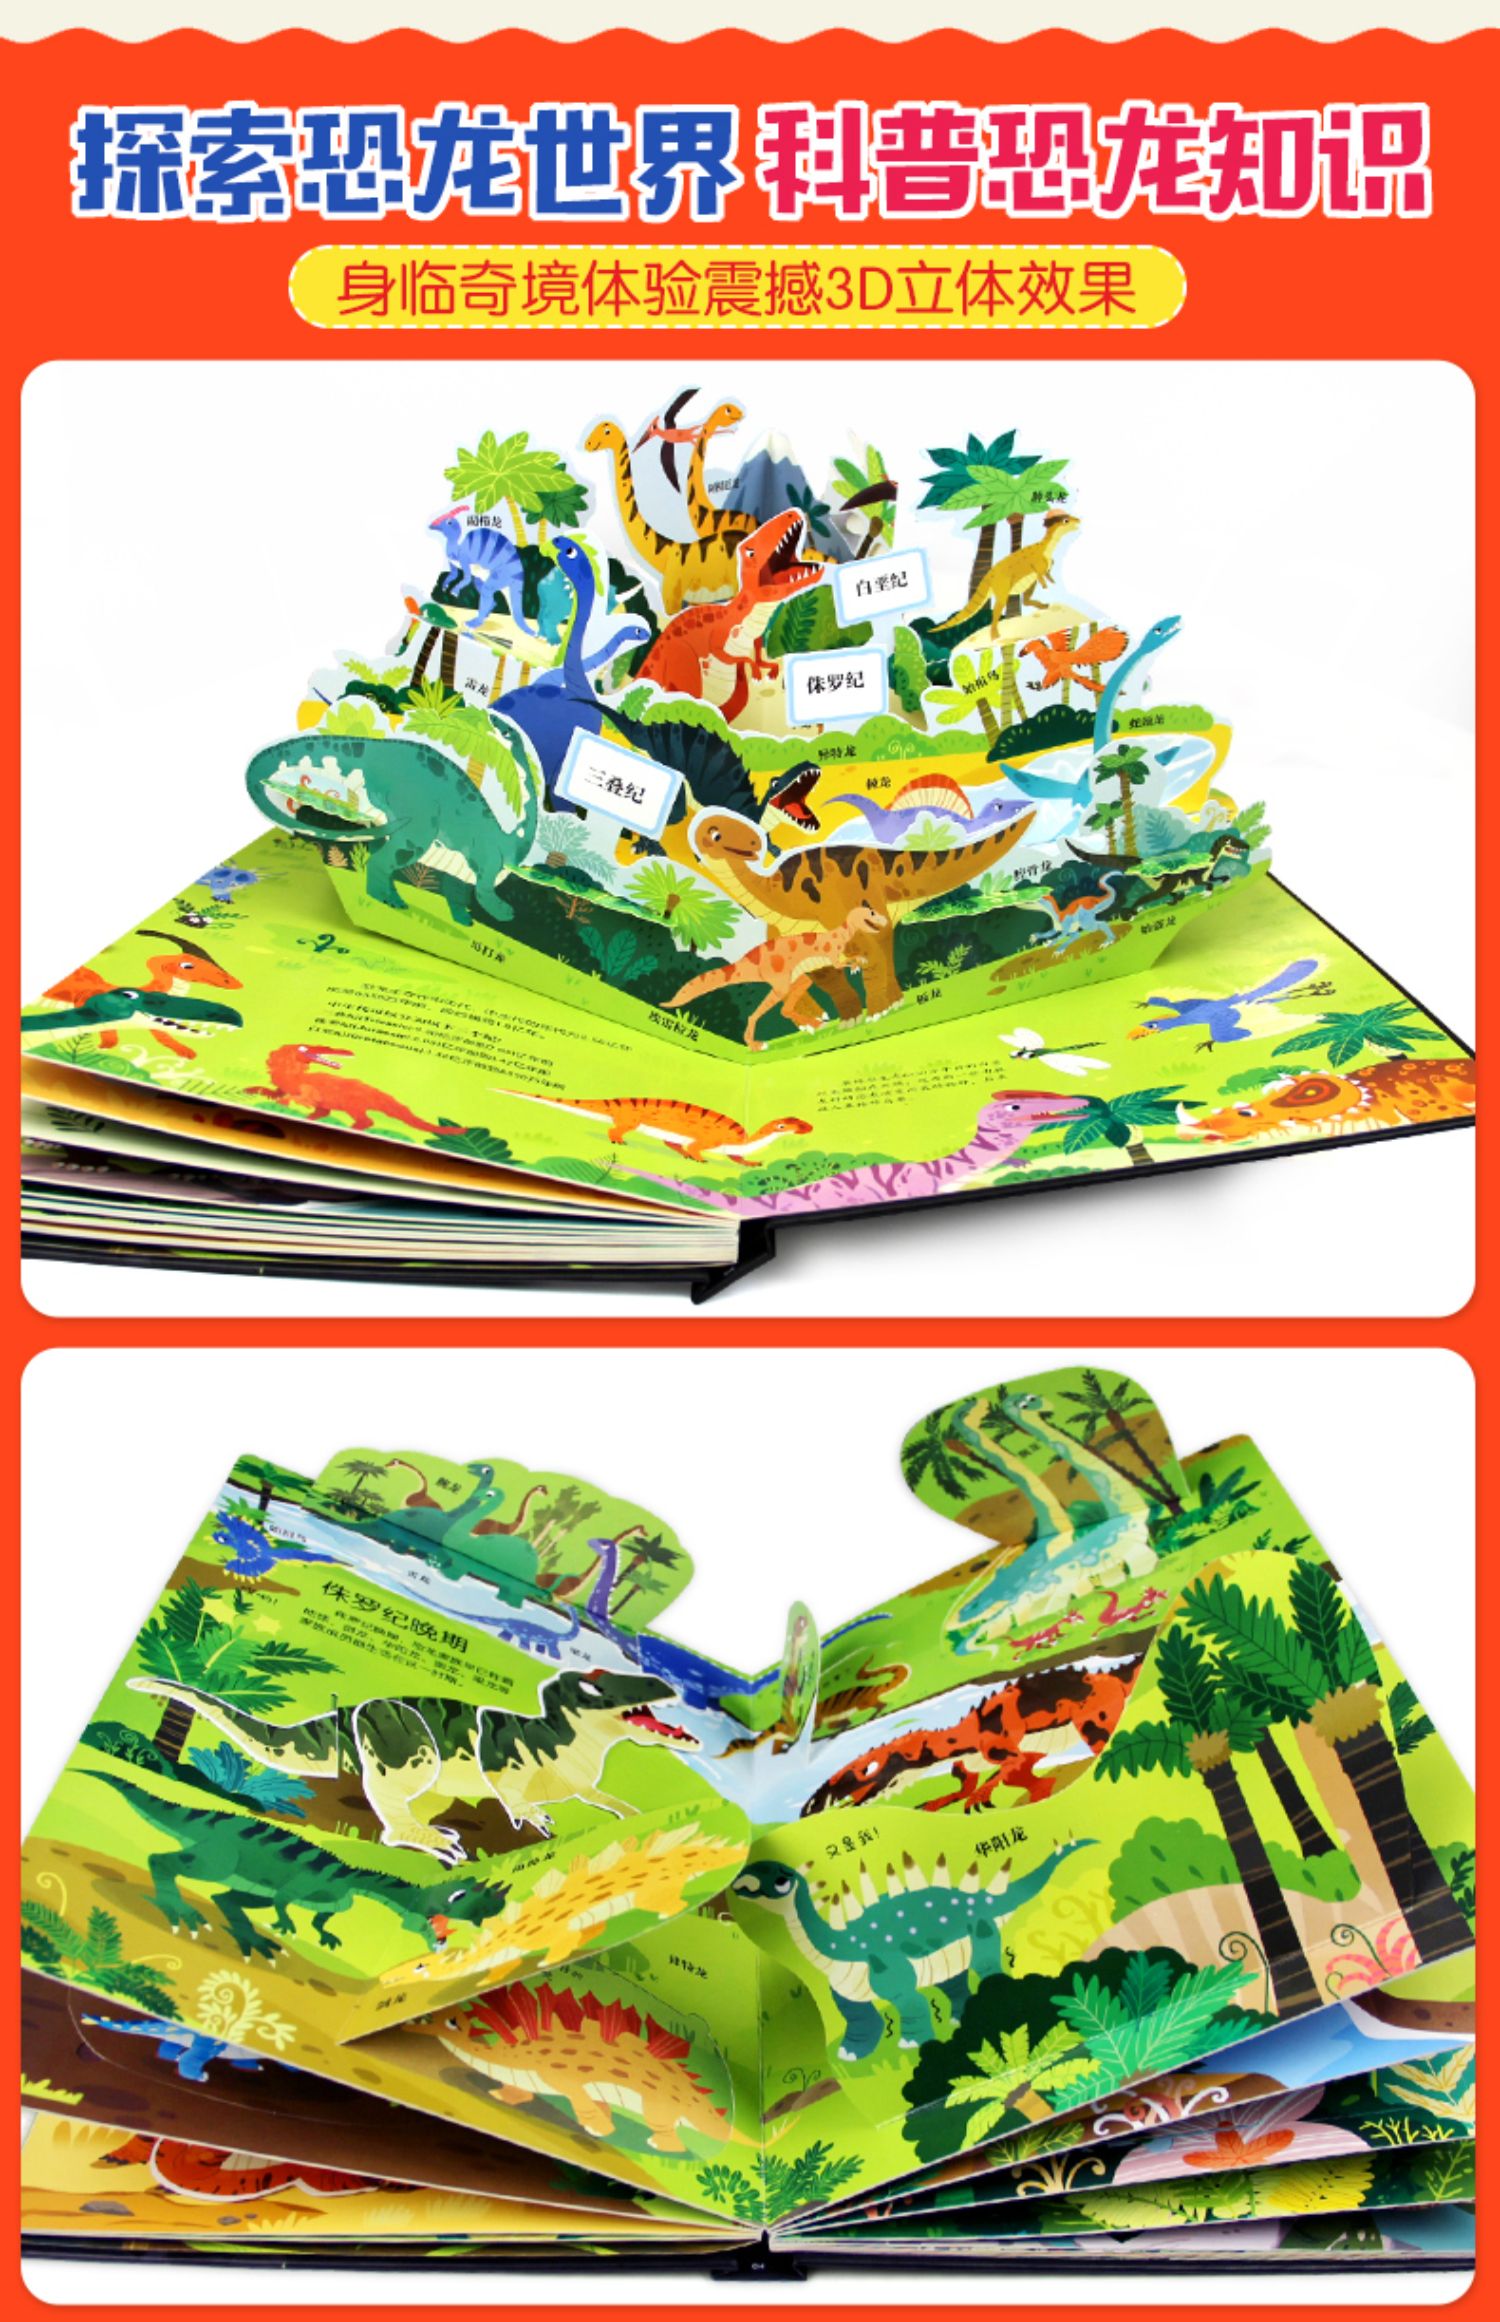 【诺森正版】恐龙立体书儿童3d翻翻书 恐龙世界揭秘系列儿童课外